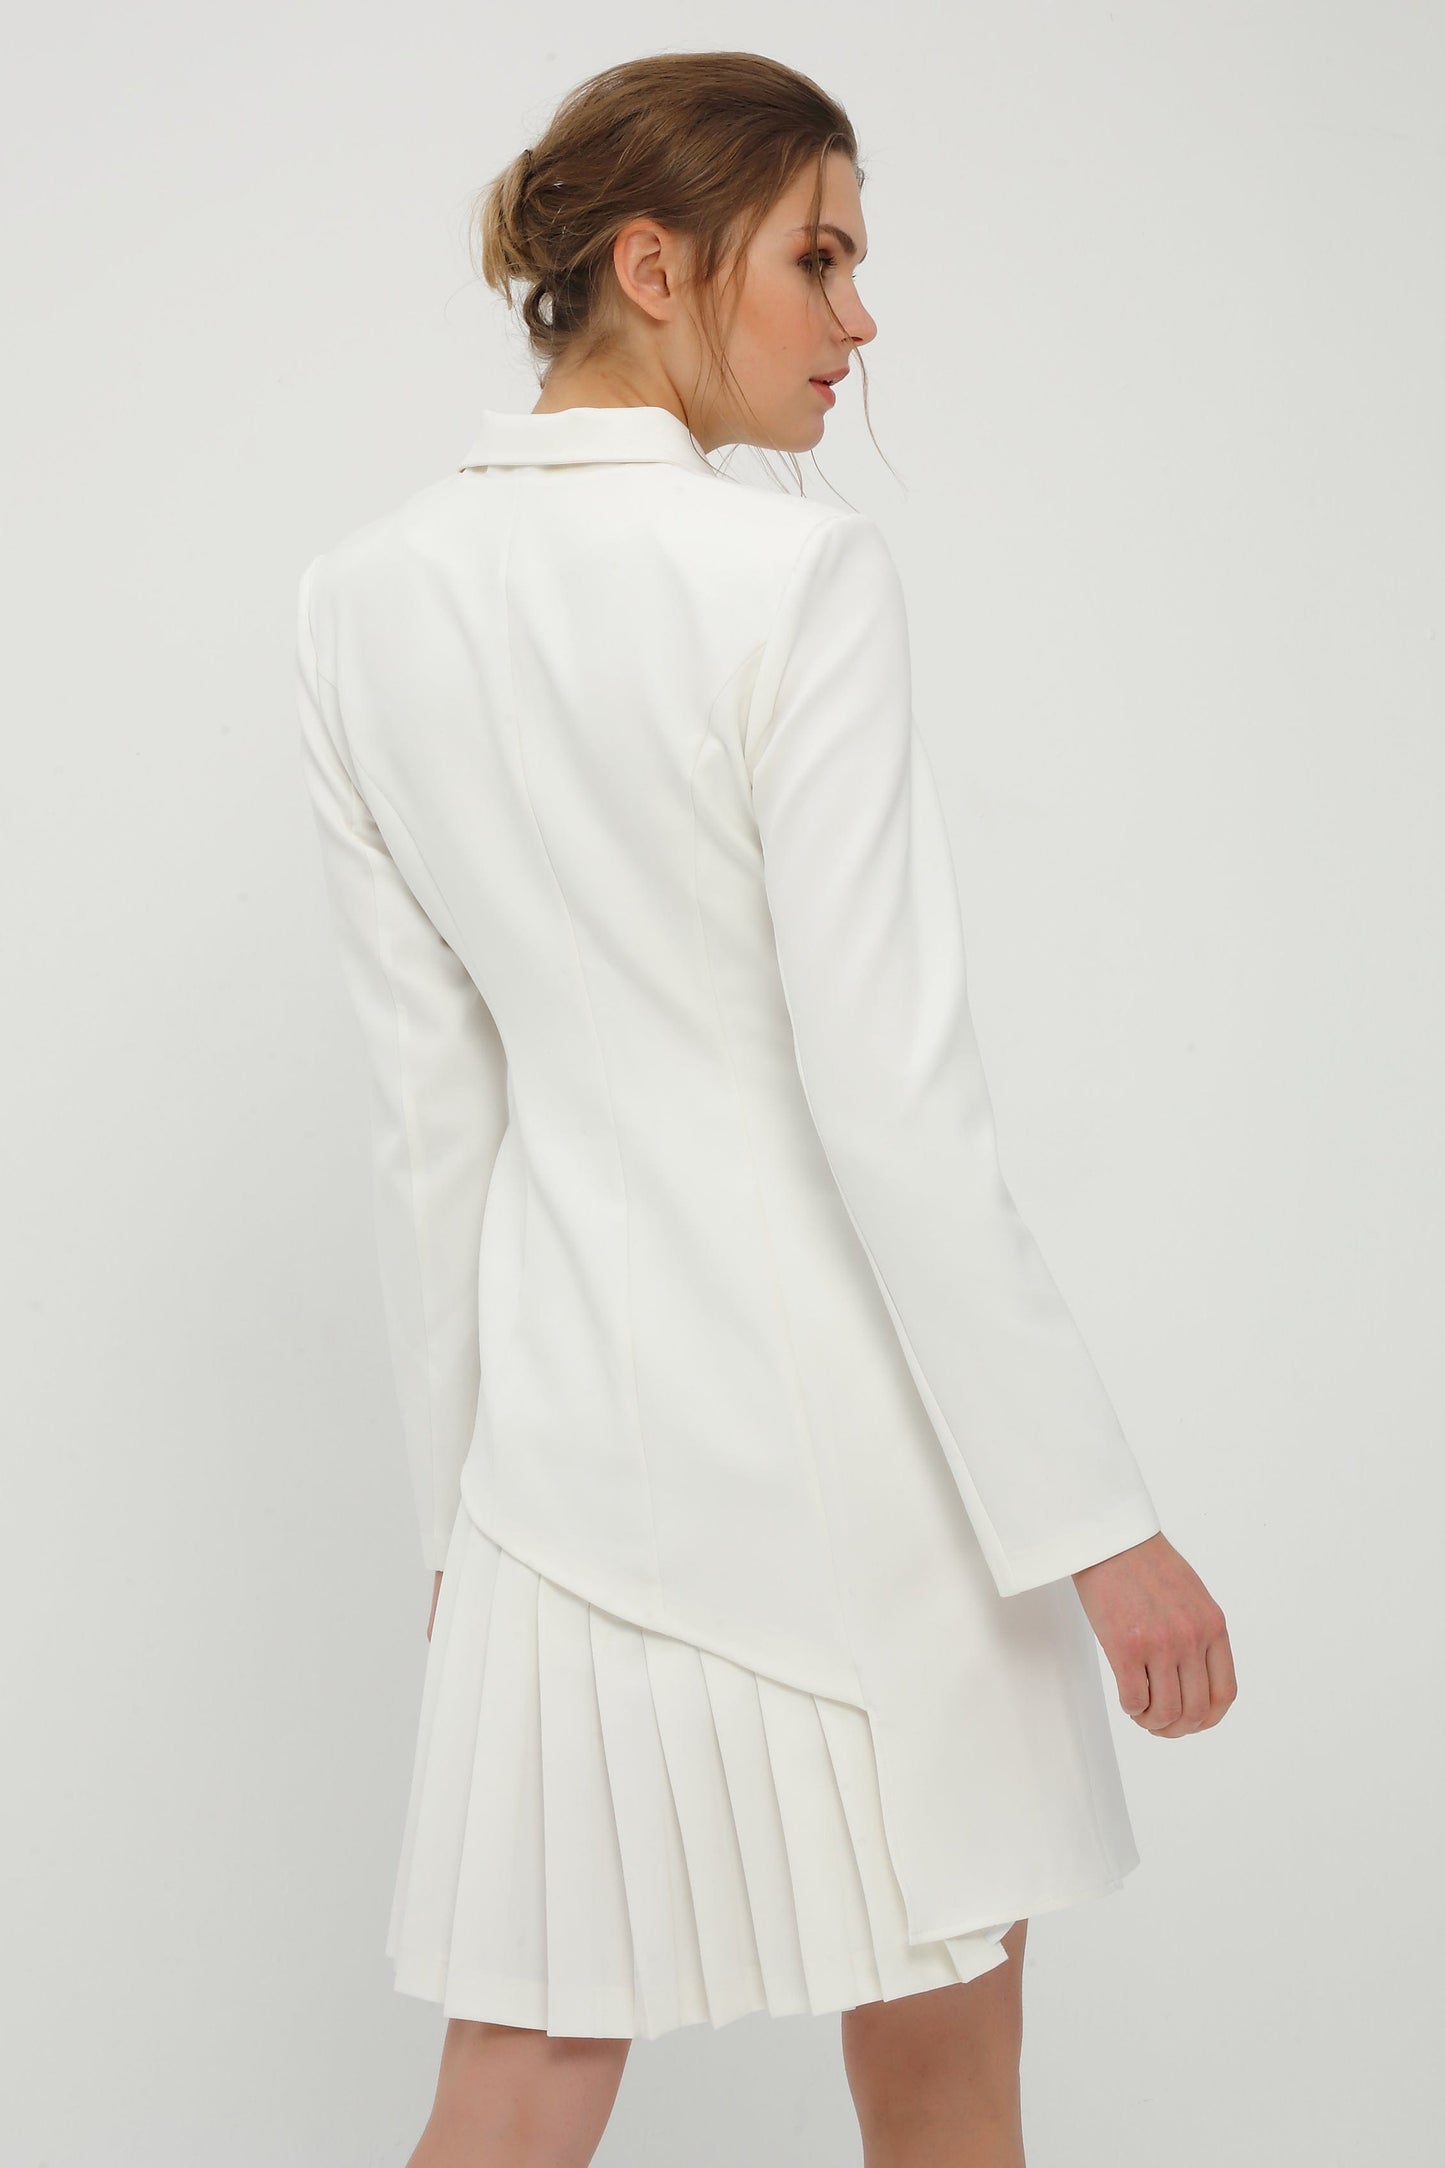 Plissee zweireihiges weißes Kleid